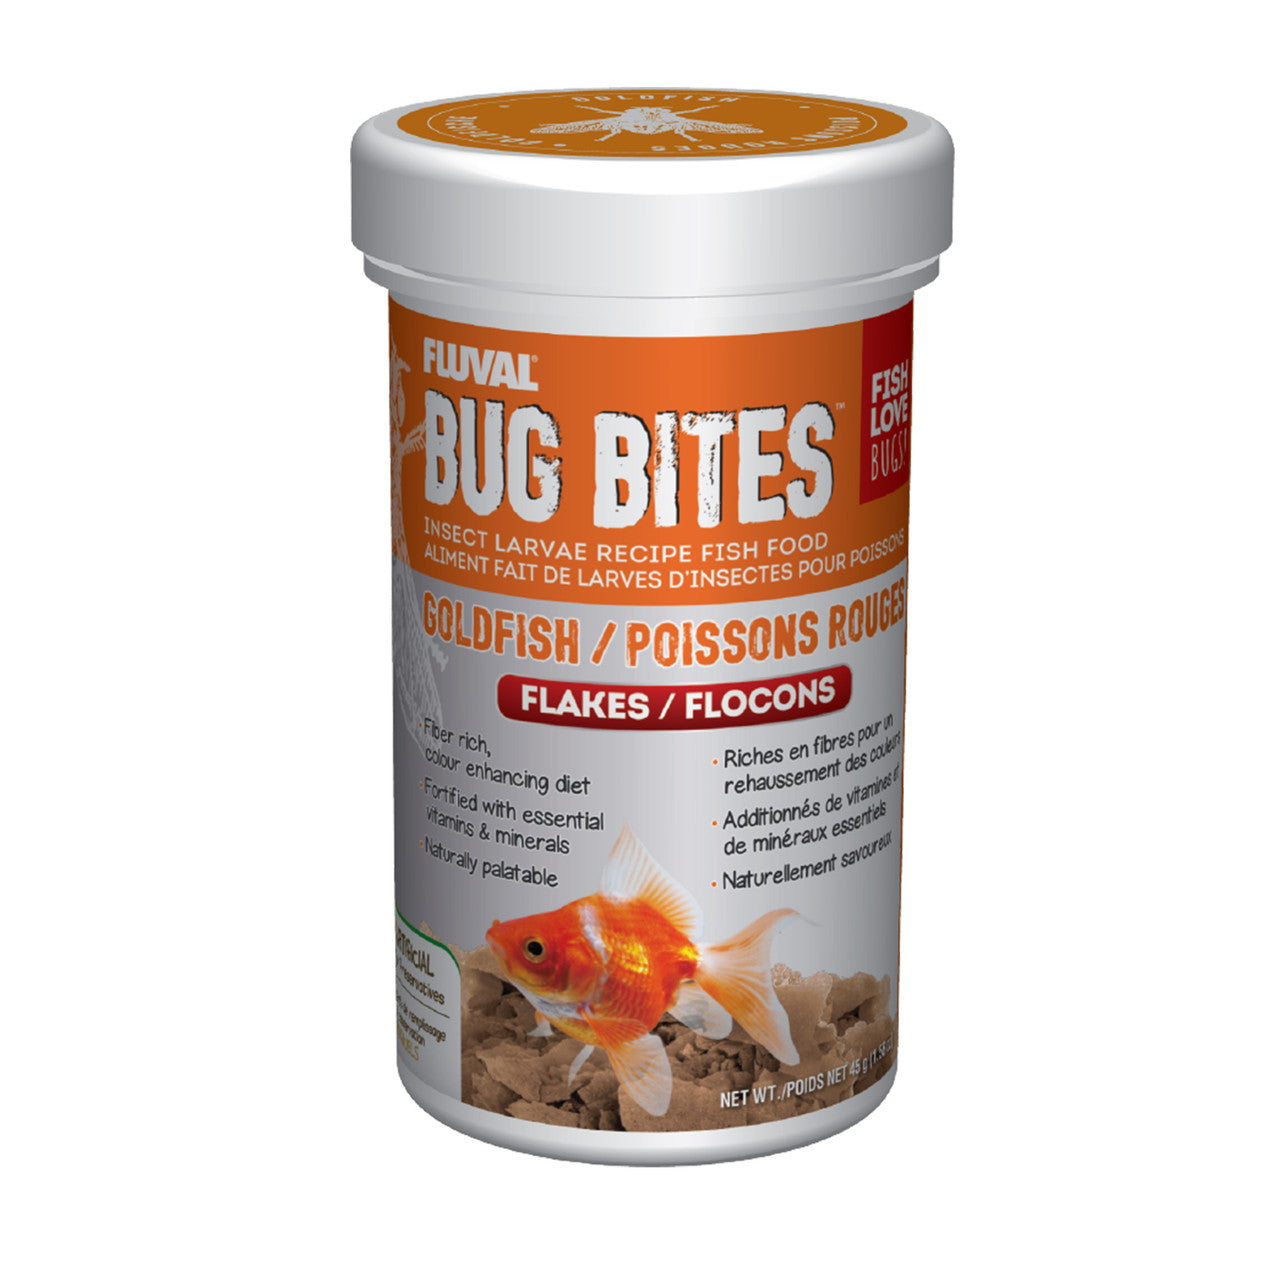 Fluval Bug Bites Goldfish Flakes 1.59 oz 015561173391